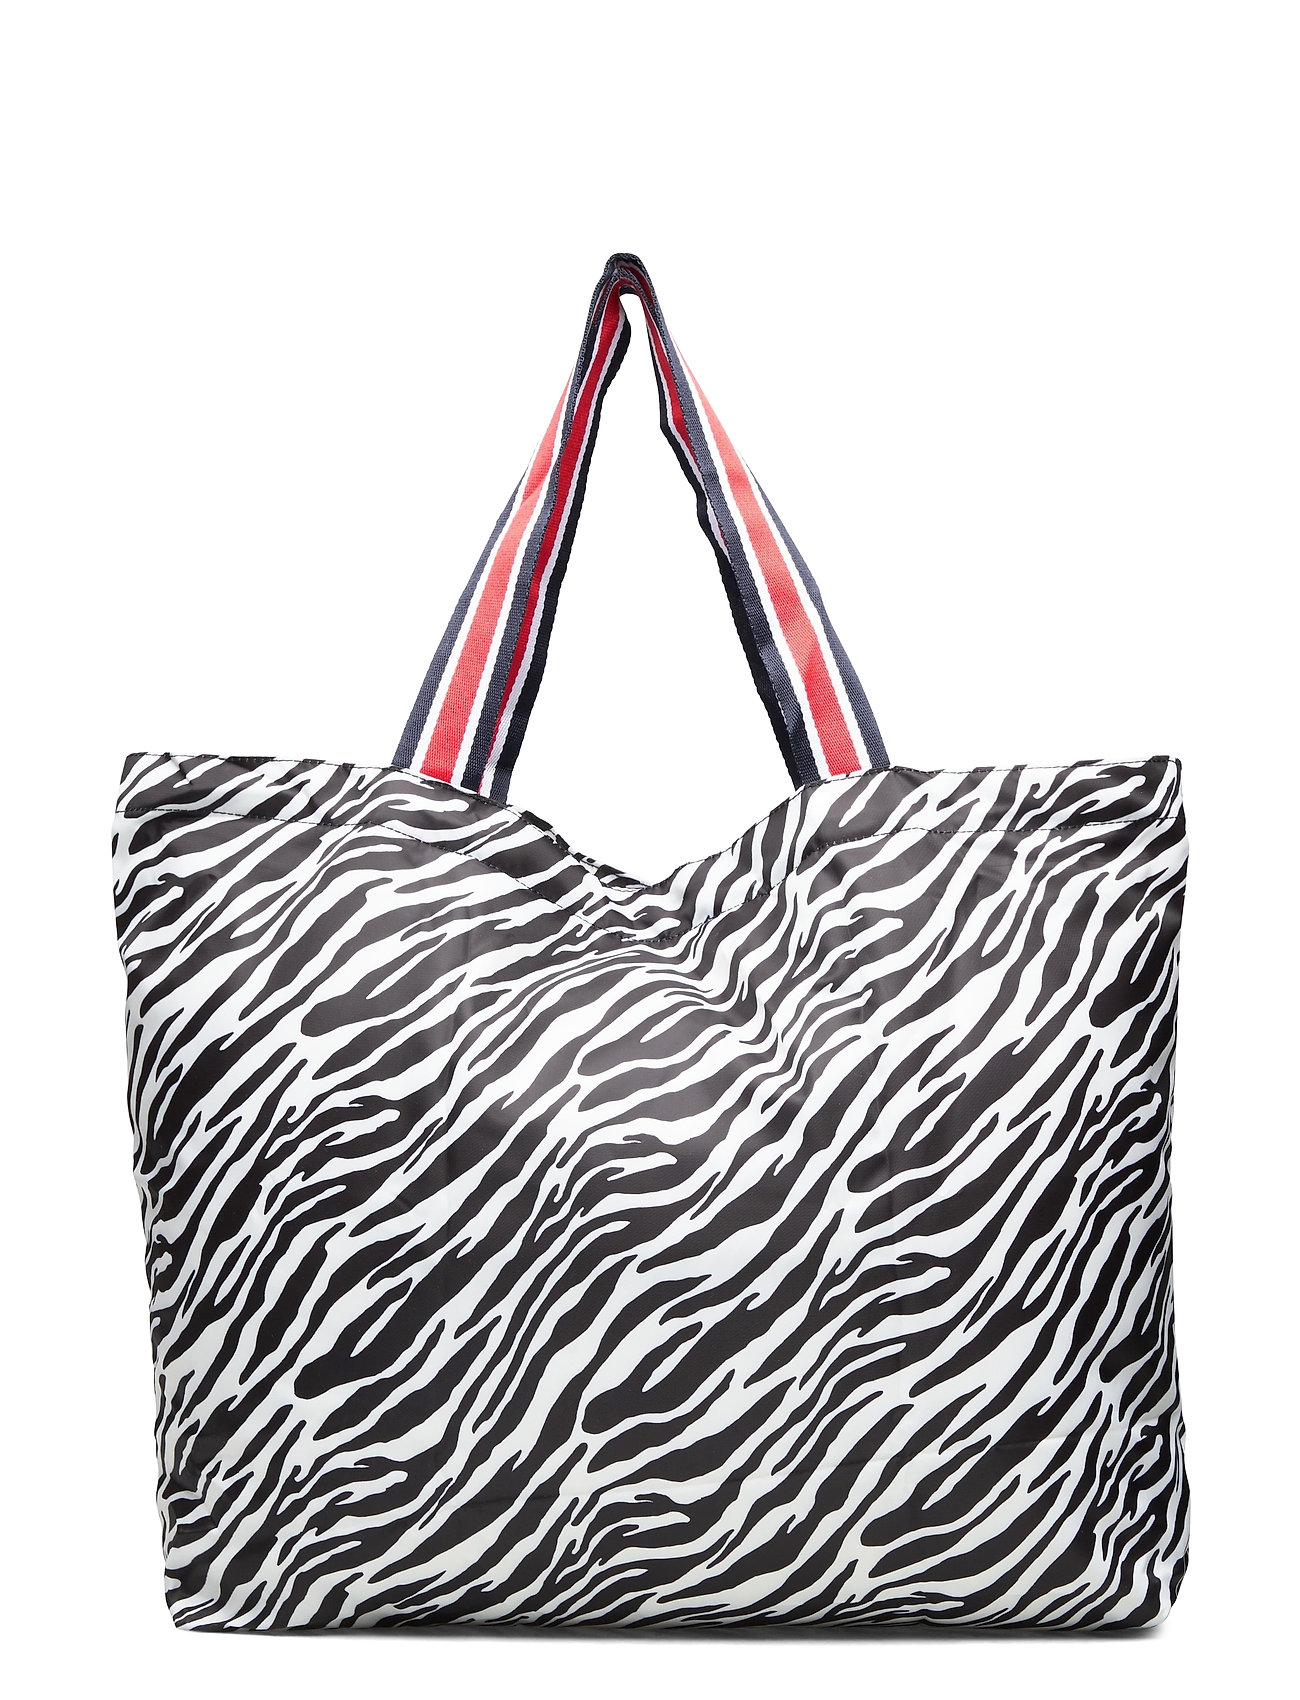 Sort BECKSÖNDERGAARD Zebra Foldable Bag Shopper Taske Becksöndergaard tasker for - Pashion.dk